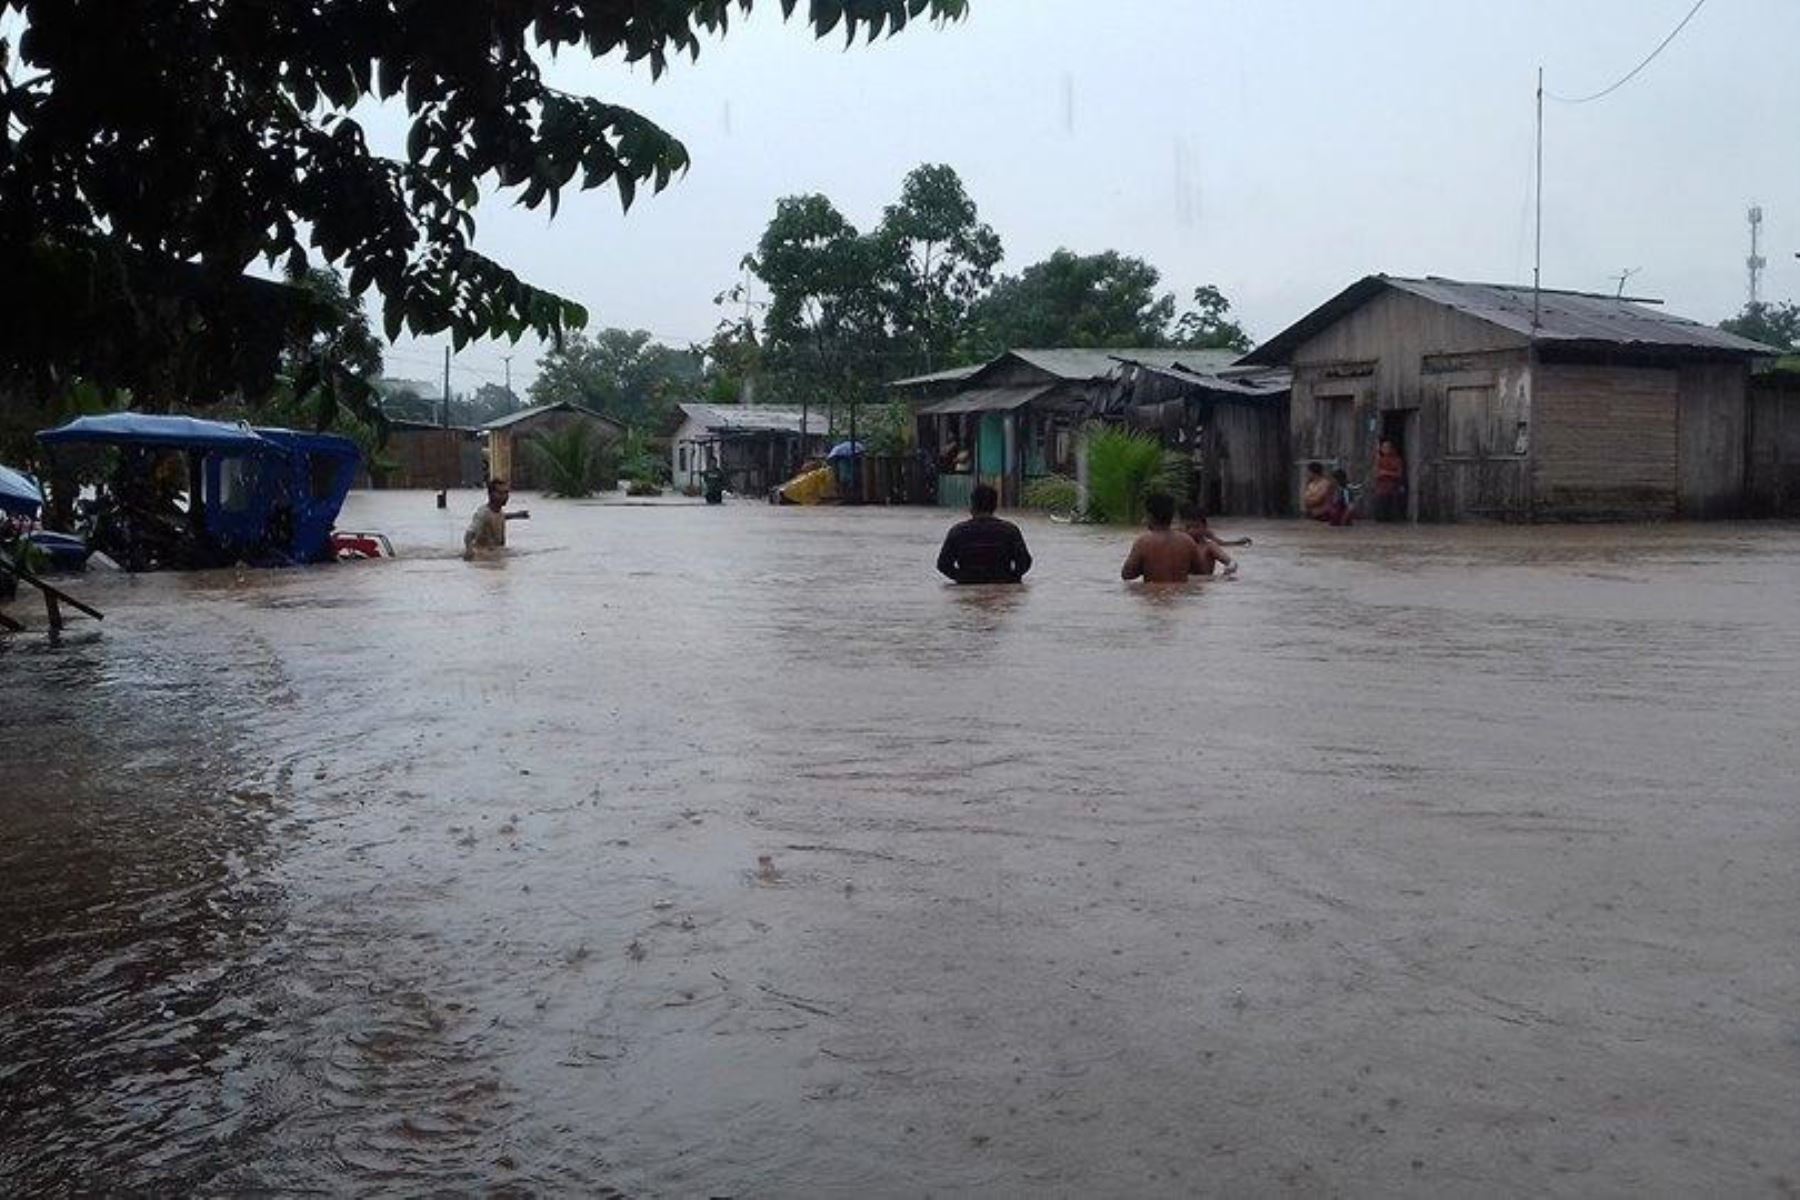 Una lluvia intensa se registró en la ciudad de Pucallpa, afectando a diversas zonas. Foto: Alimber @Sand_Trading/Twitter